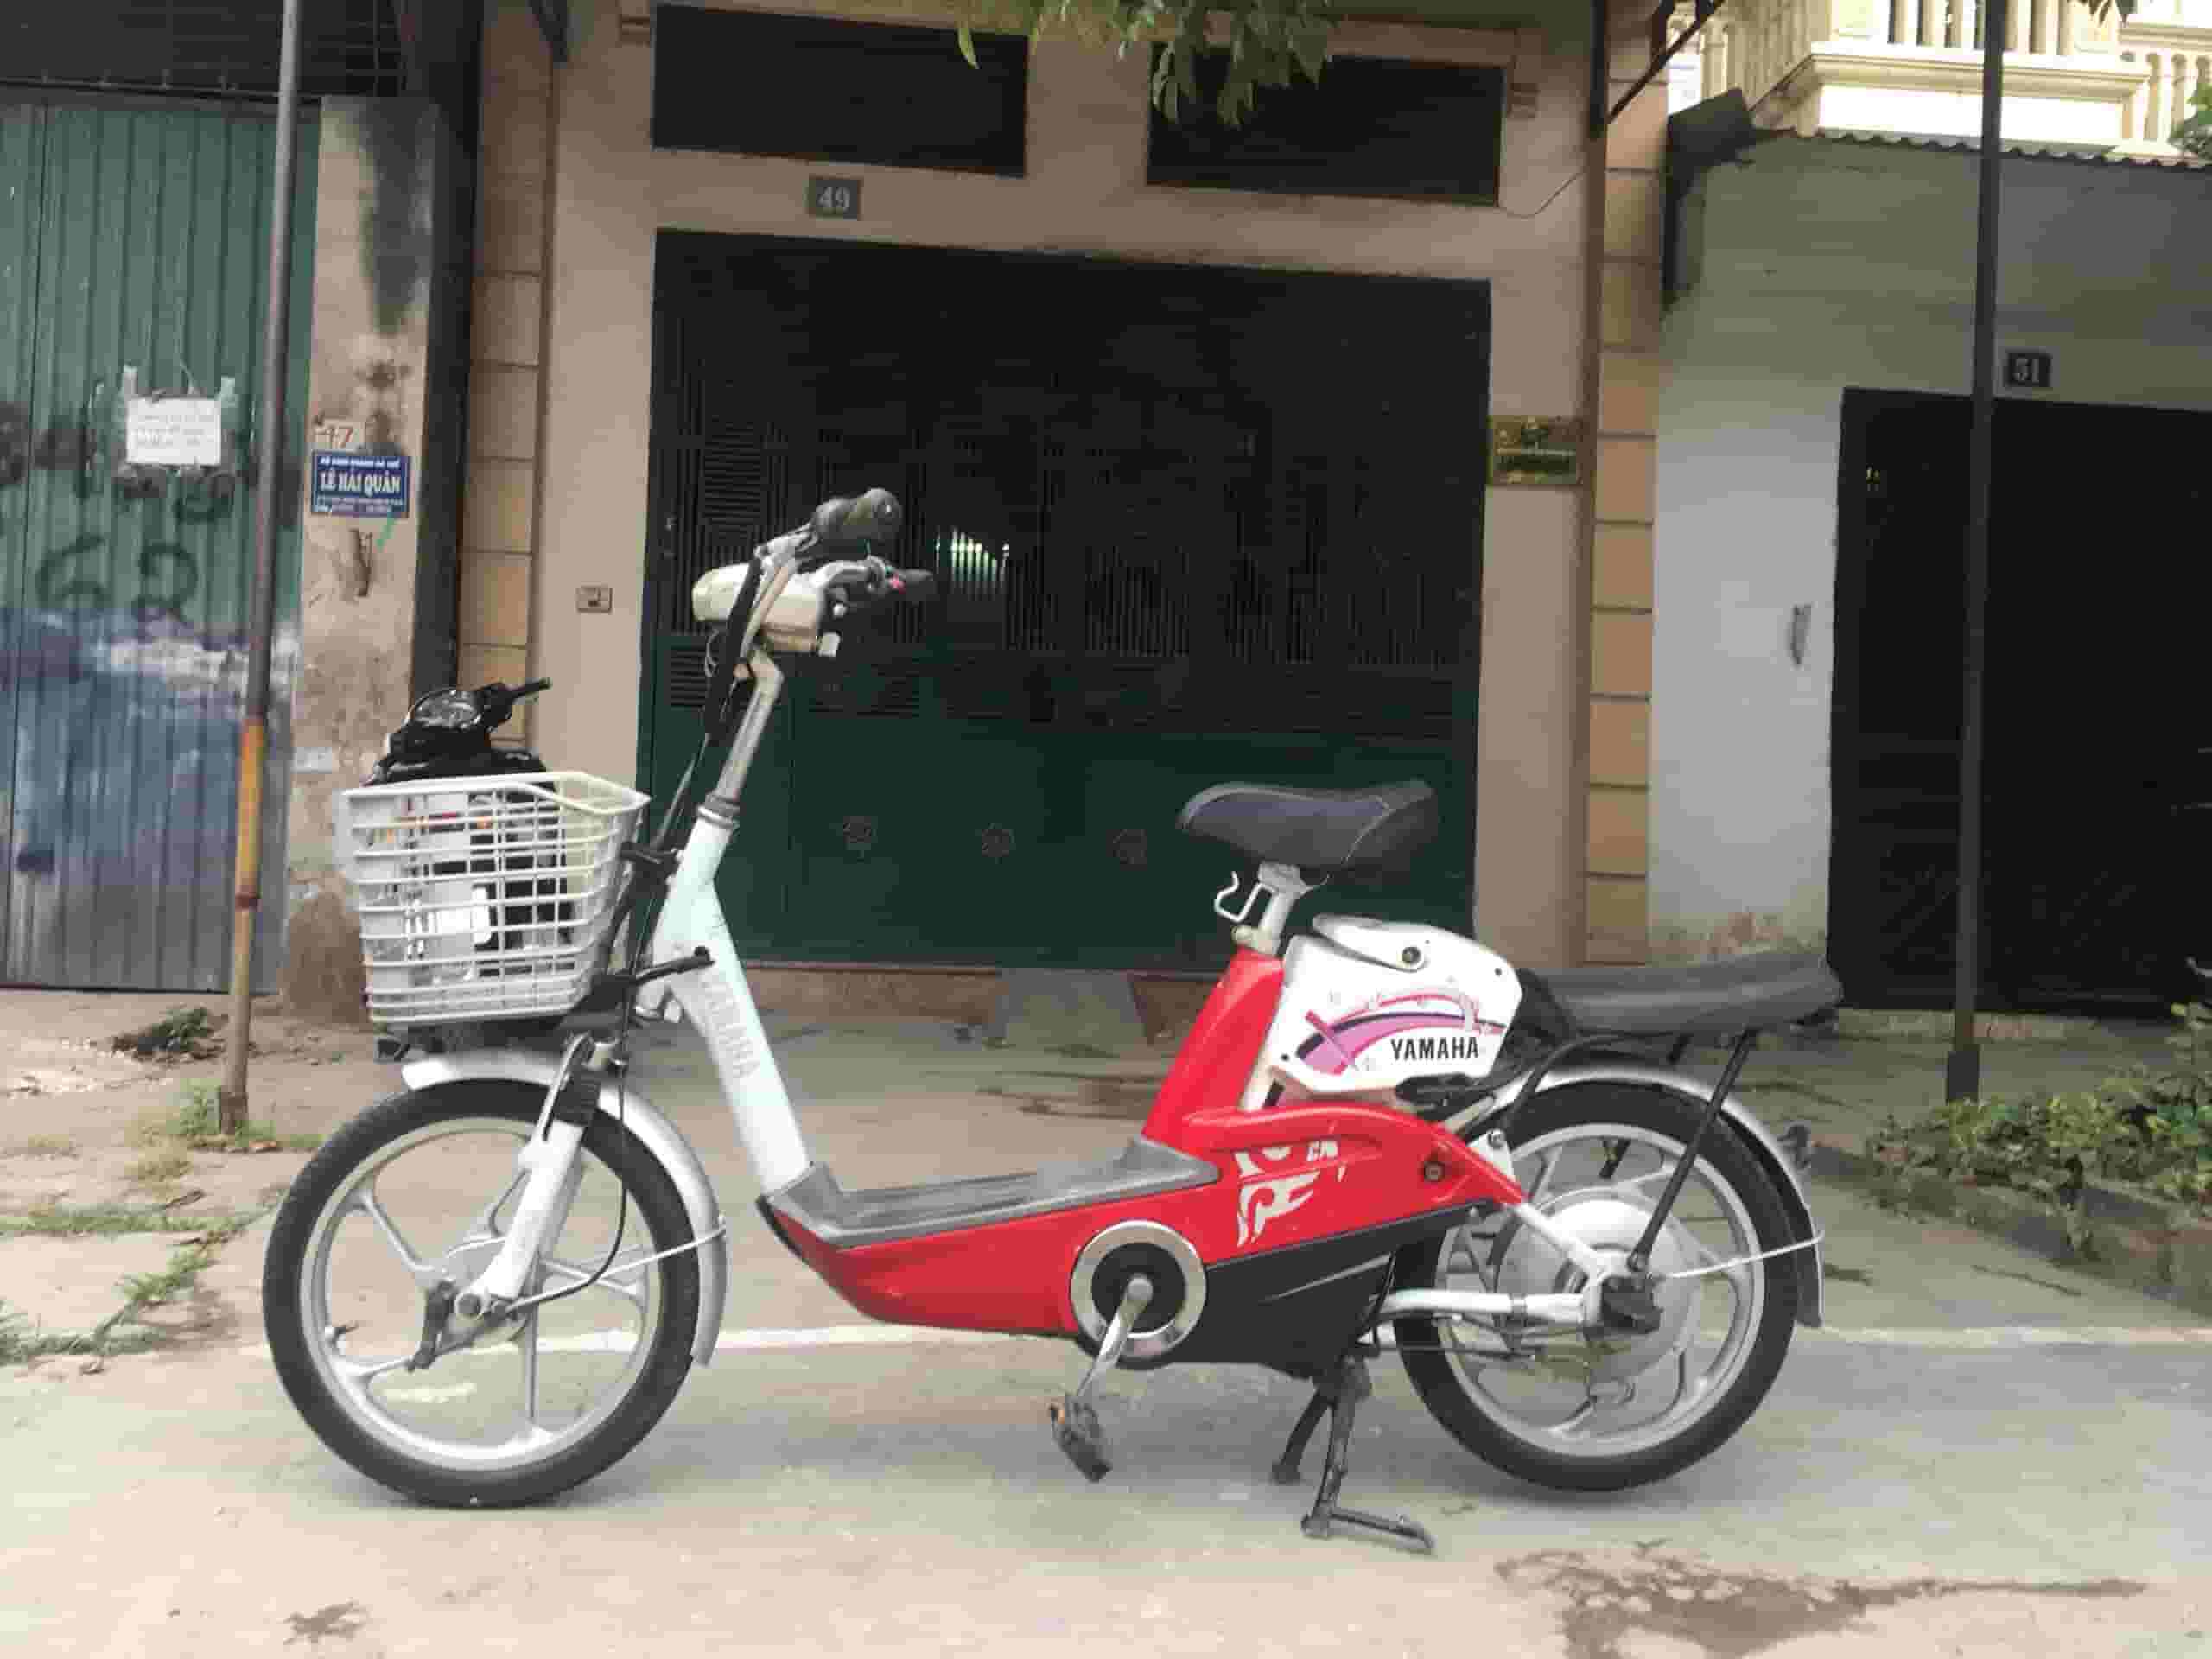 Mua bán xe đạp điện cũ - xe máy điện cũ tại Hàng Buồm - Hoàn Kiếm